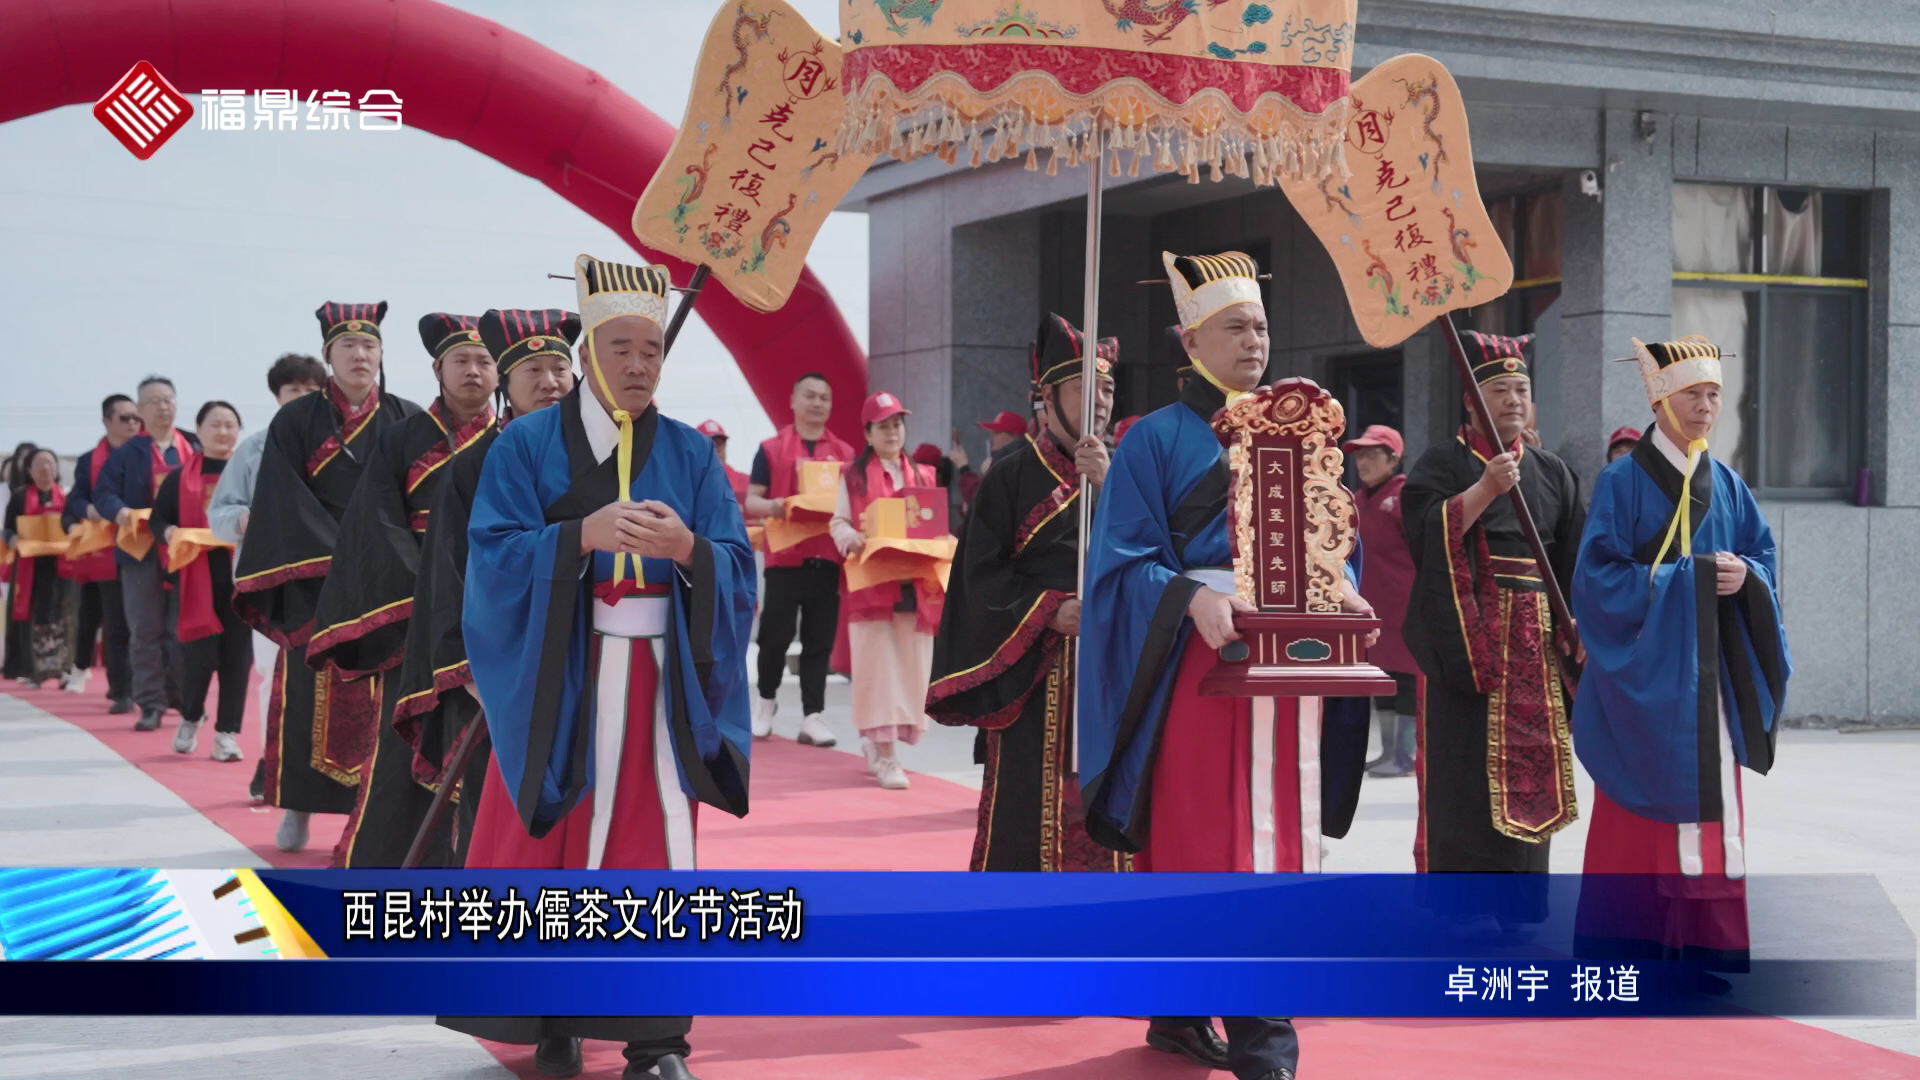 西昆村舉辦儒茶文化節活動